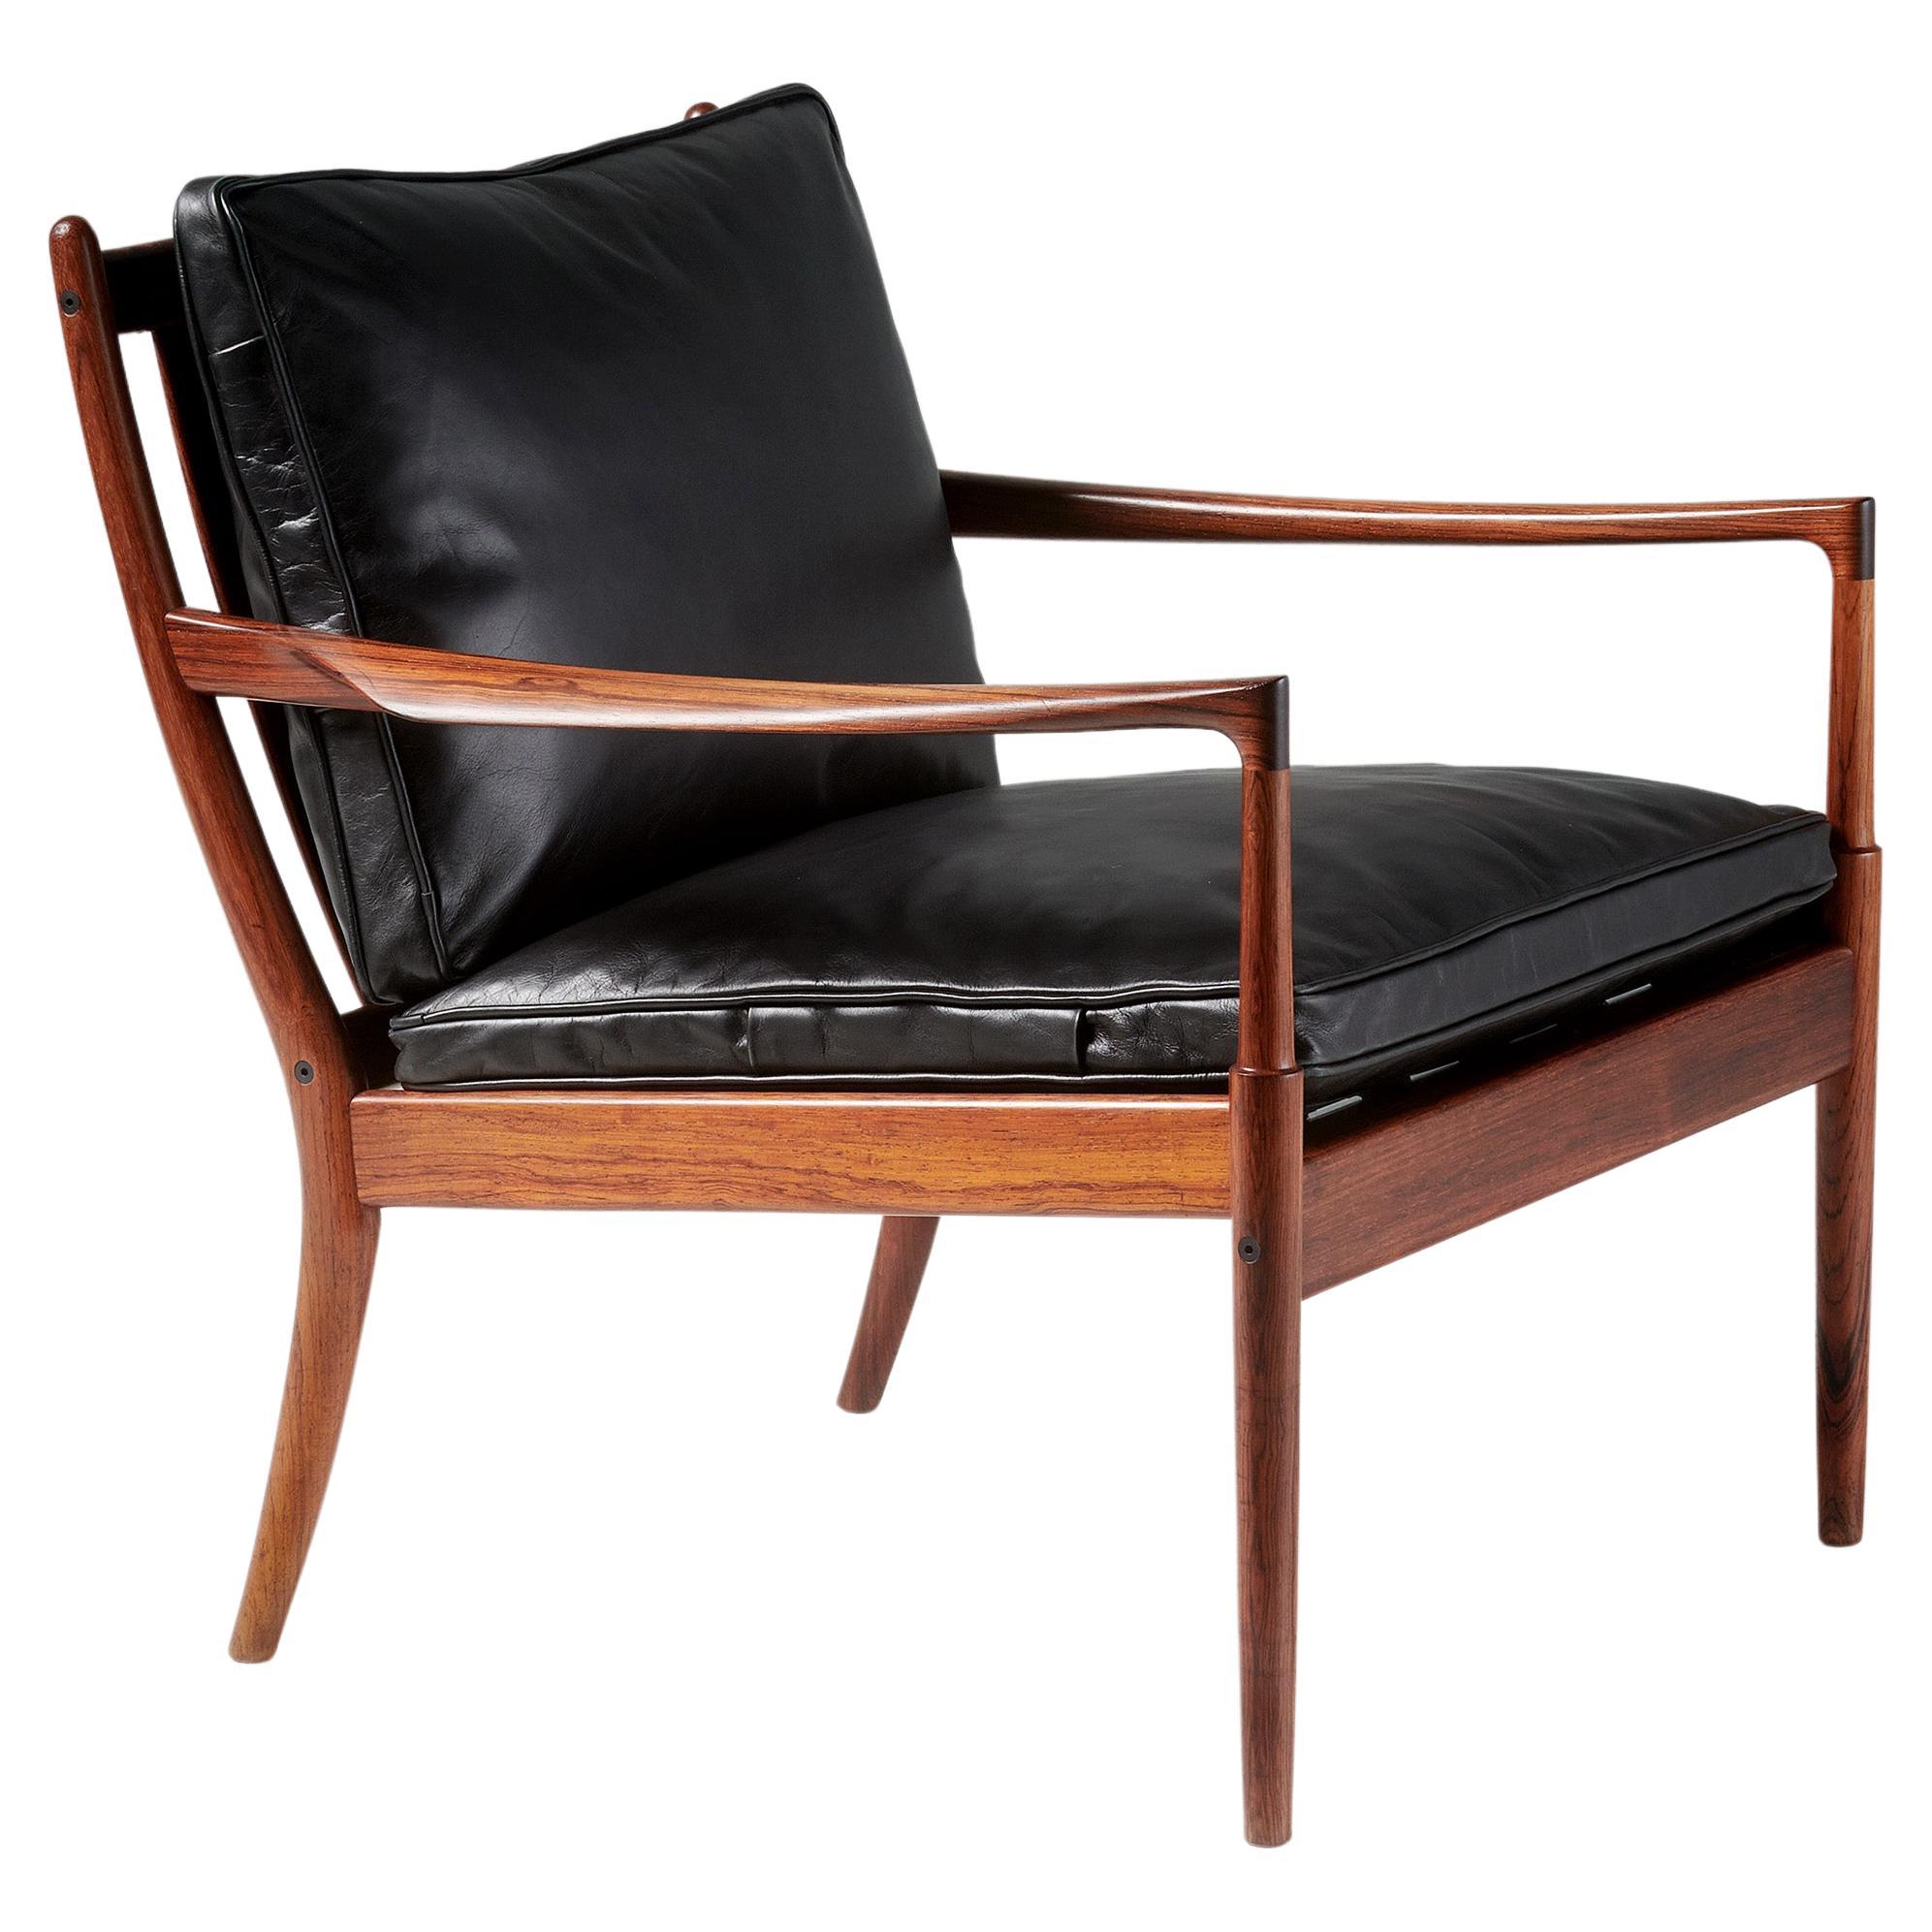 Ib Kofod-Larsen Rosewood & Leather Samso Chair, 1958